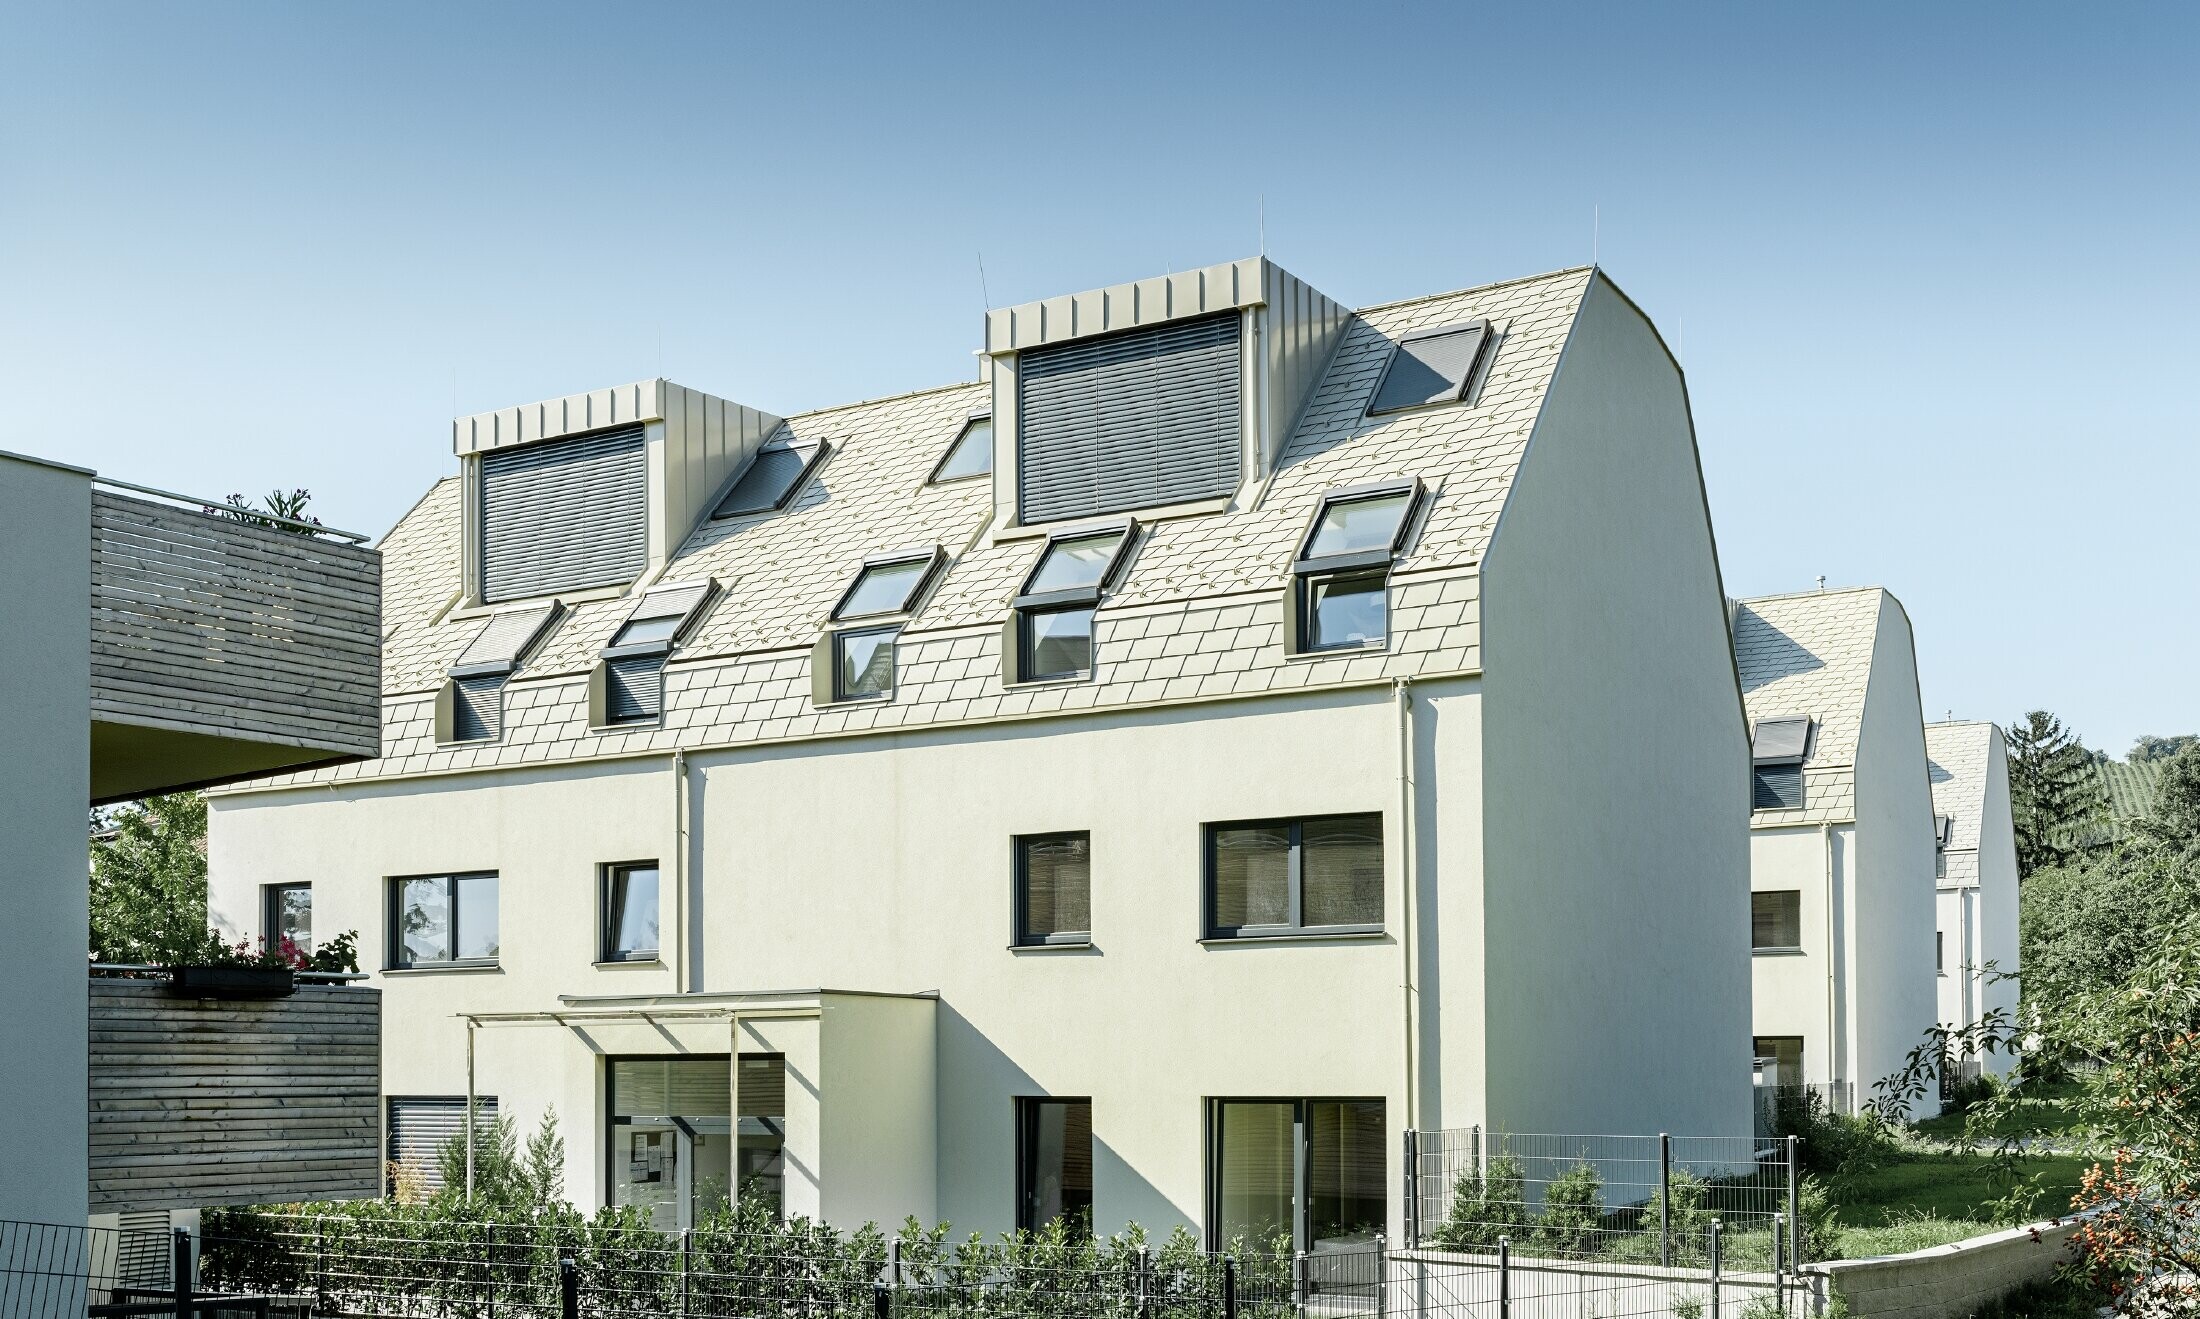 új építésű lakónegyed nagy alumínium burkolatú tetőfelülettel és sok tetősíkablakkal